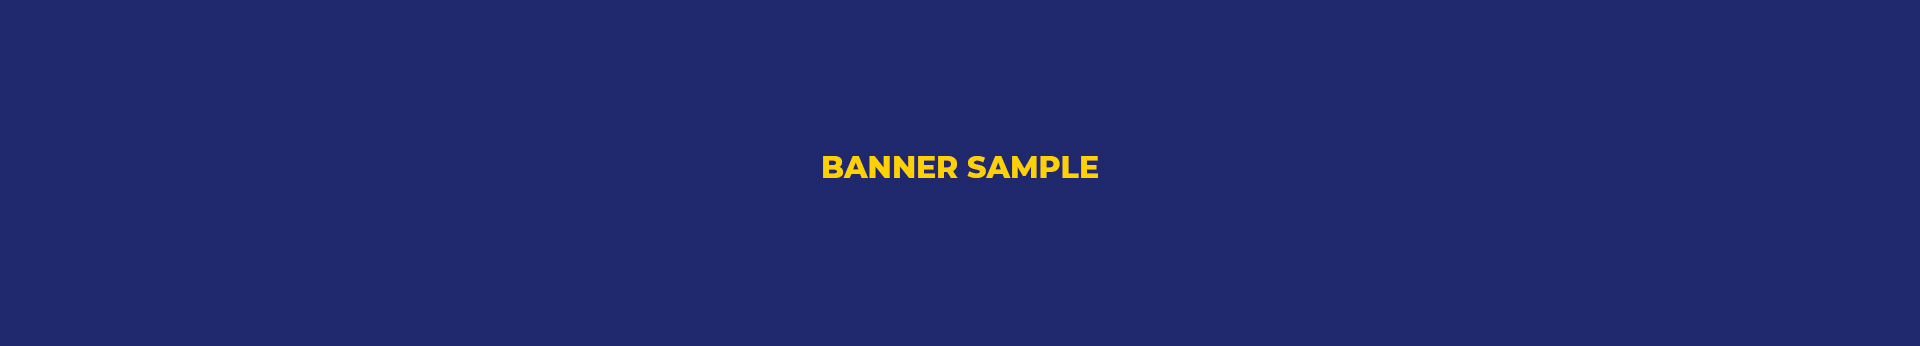 Banner sample